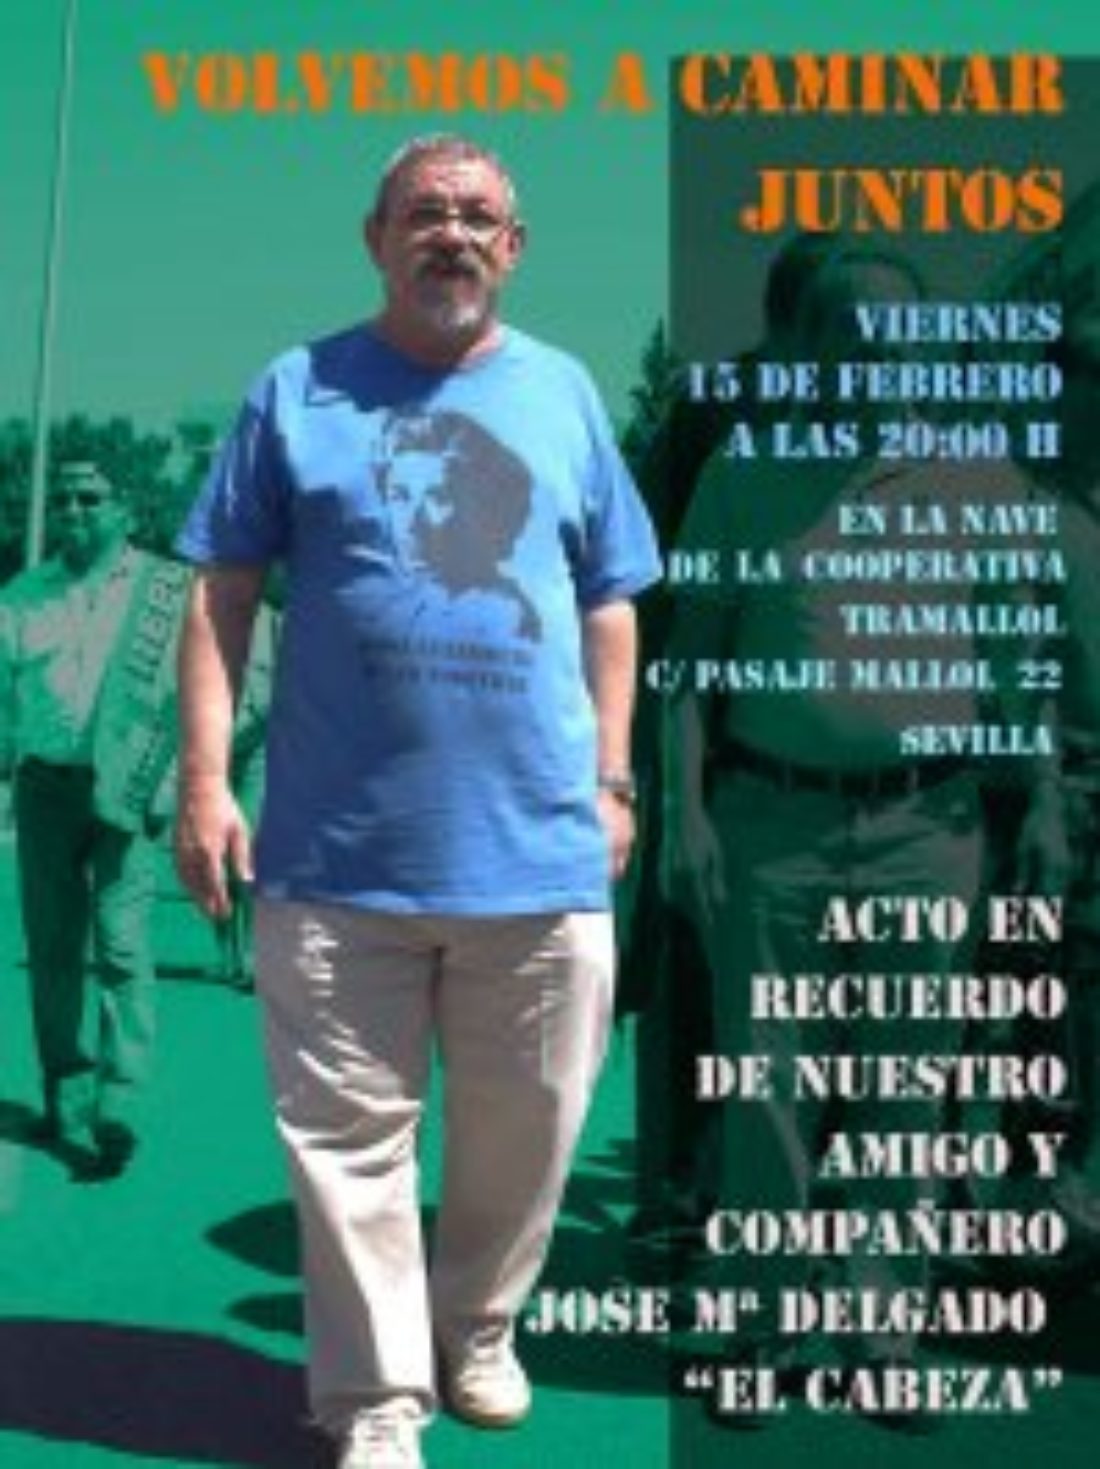 Acto de homenaje a Jose María Delgado, fundador de ATTAC Sevilla y del Foro Social de Sevilla